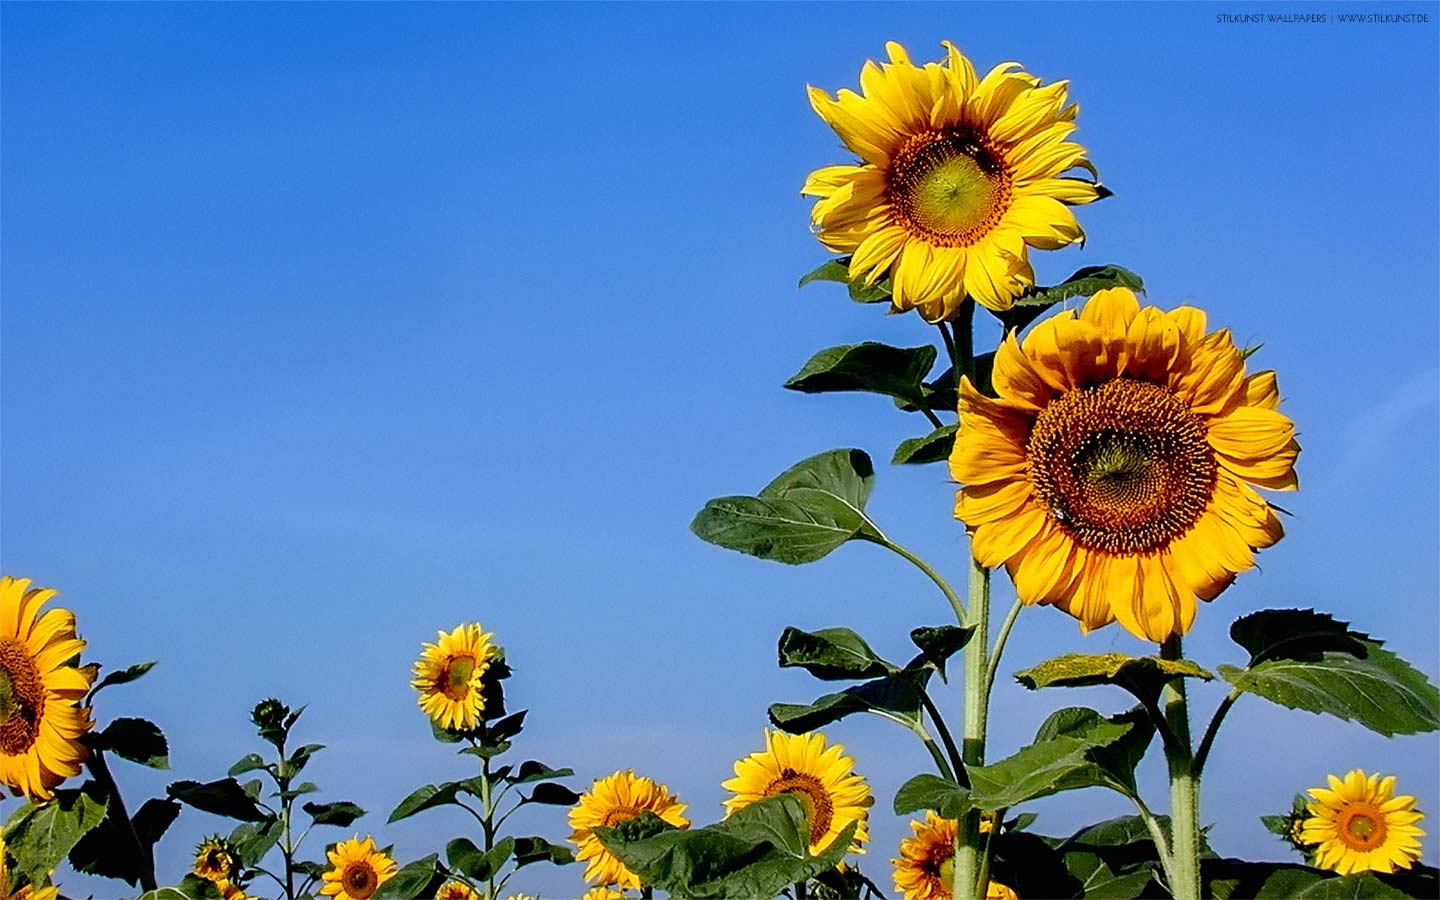 Sonnenblumen auf dem Feld | 1440 x 900px | Bild: ©by Sabrina | Reiner | www.stilkunst.de | Lizenz: CC BY-SA